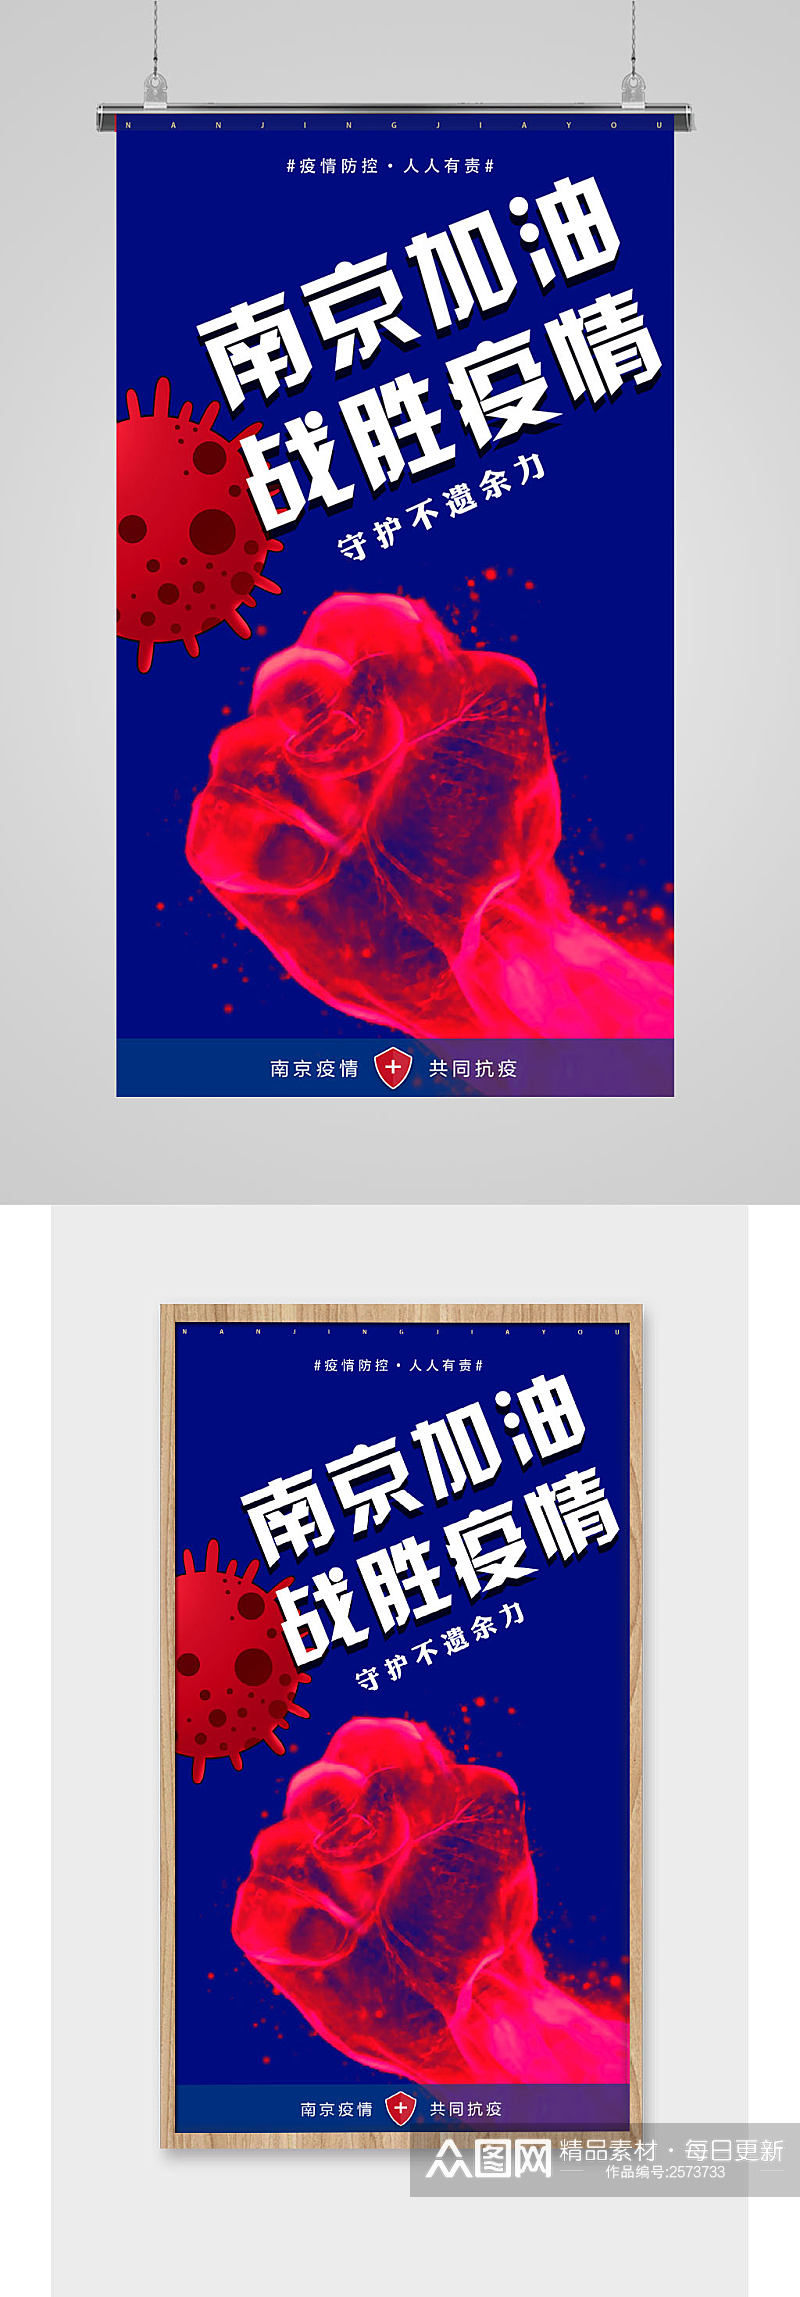 南京加油战胜疫情宣传海报素材